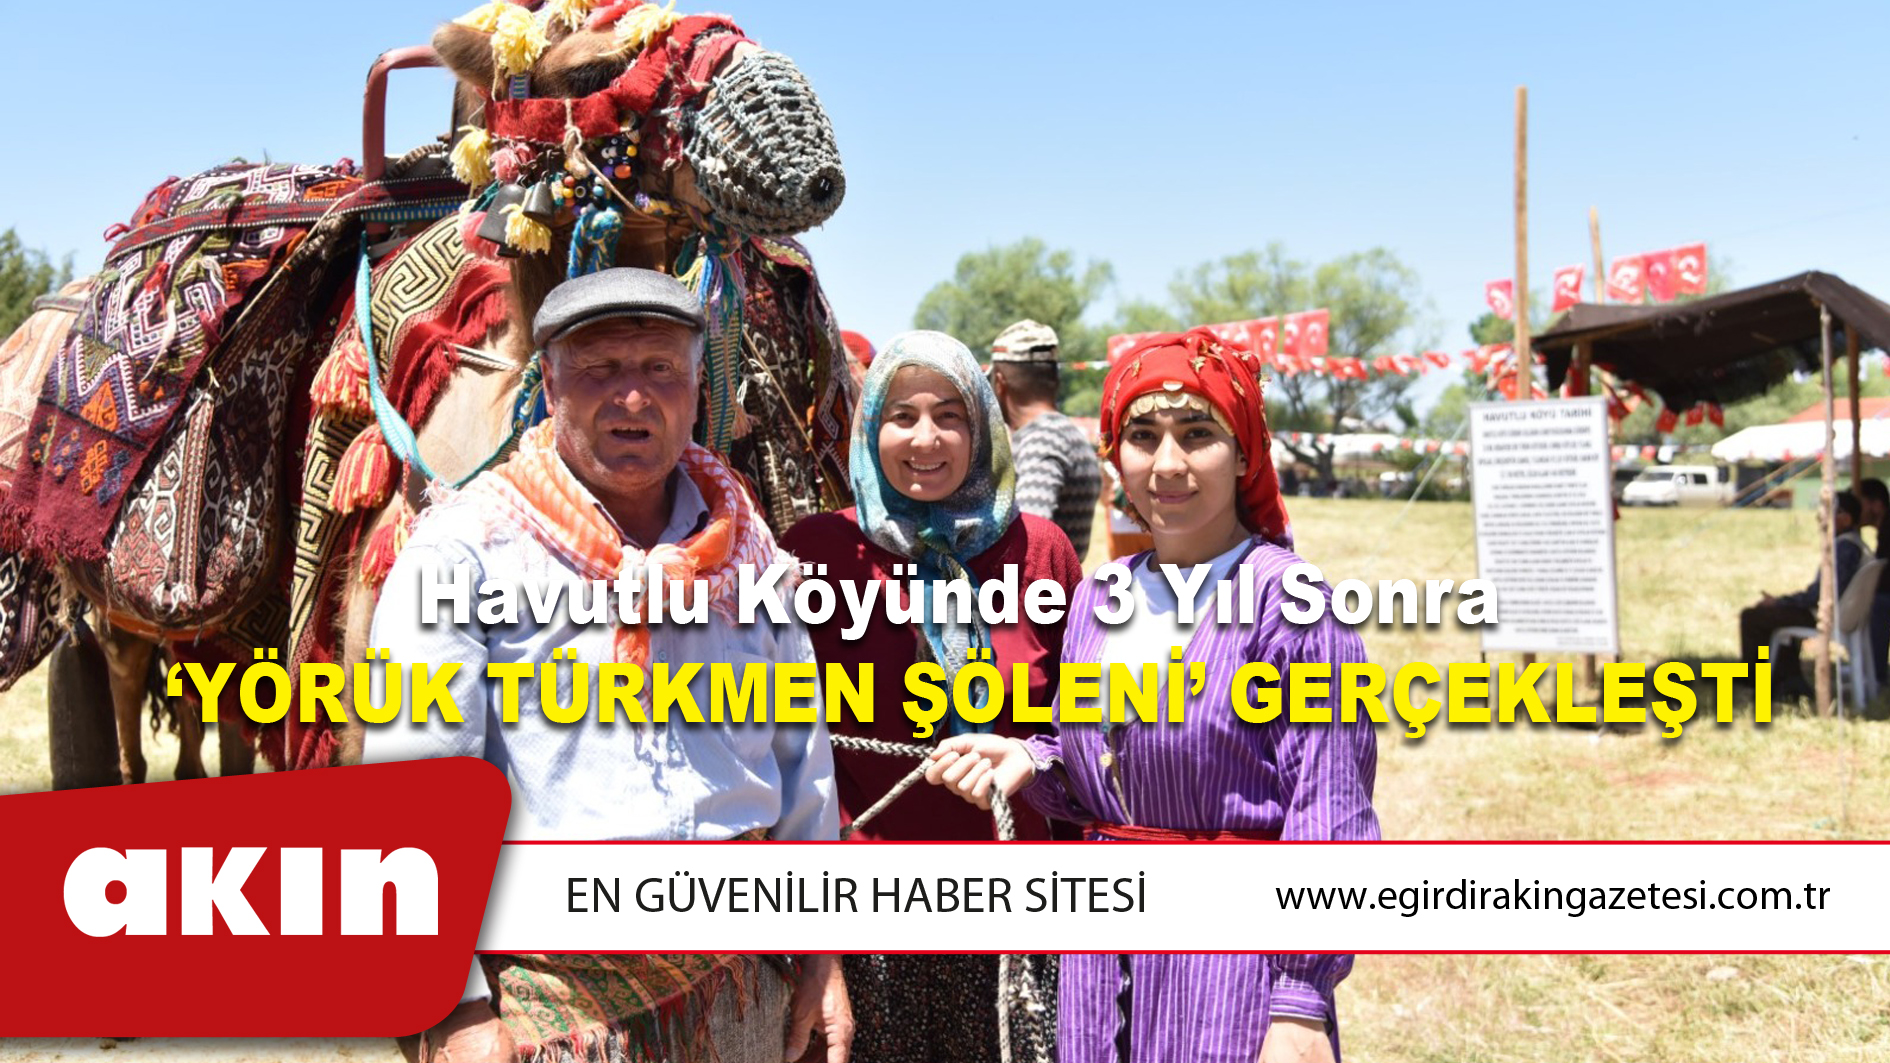 Havutlu Köyünde 3 Yıl Sonra  ‘Yörük Türkmen Şöleni’ Gerçekleşti